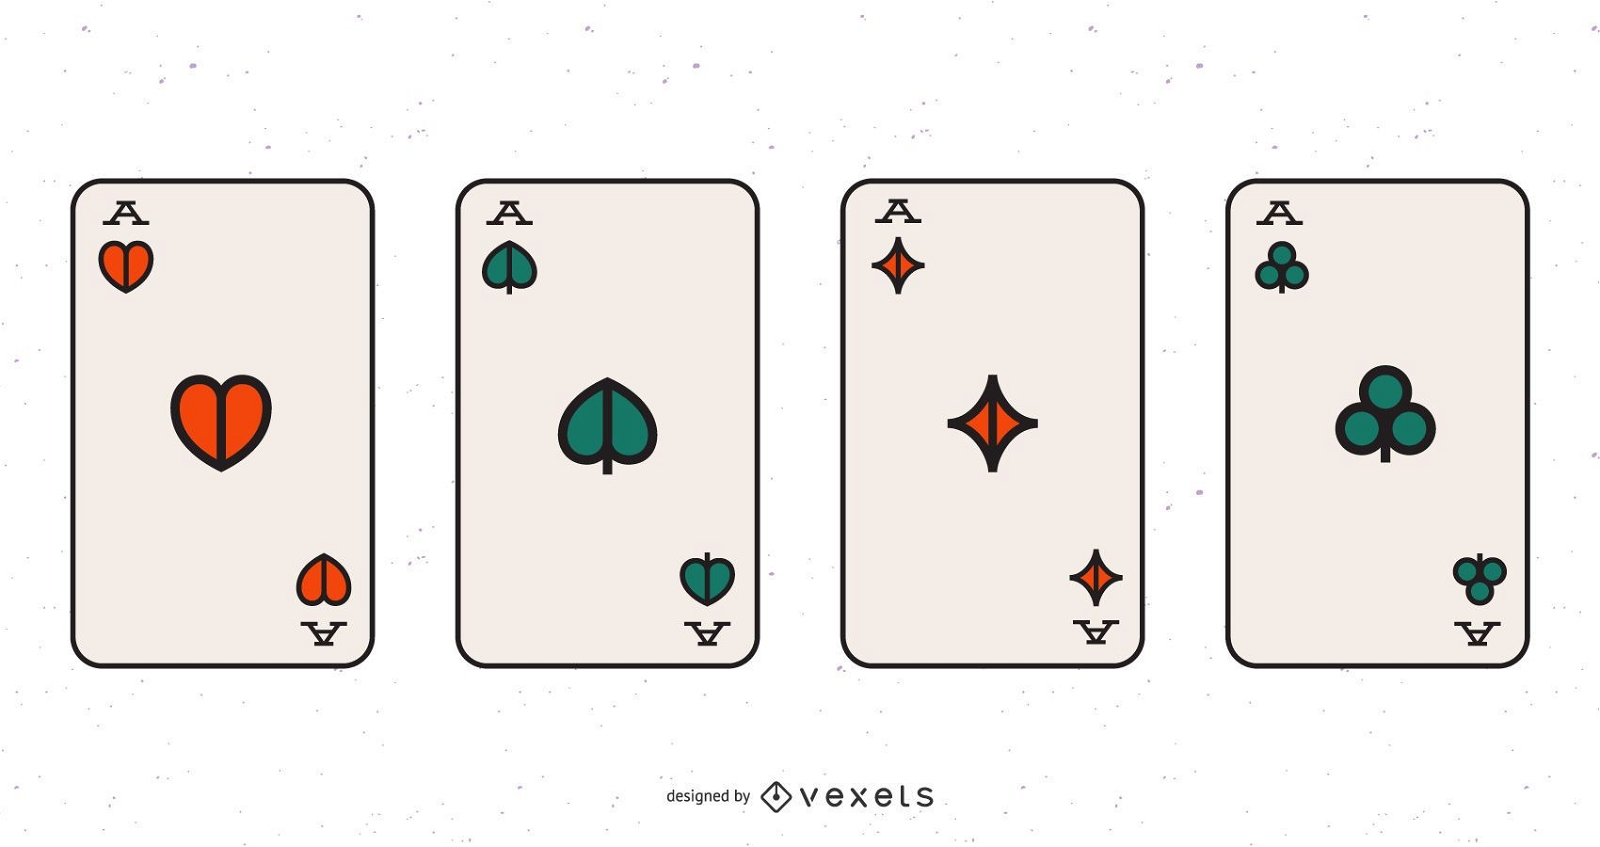 Tarjetas de juego de póquer